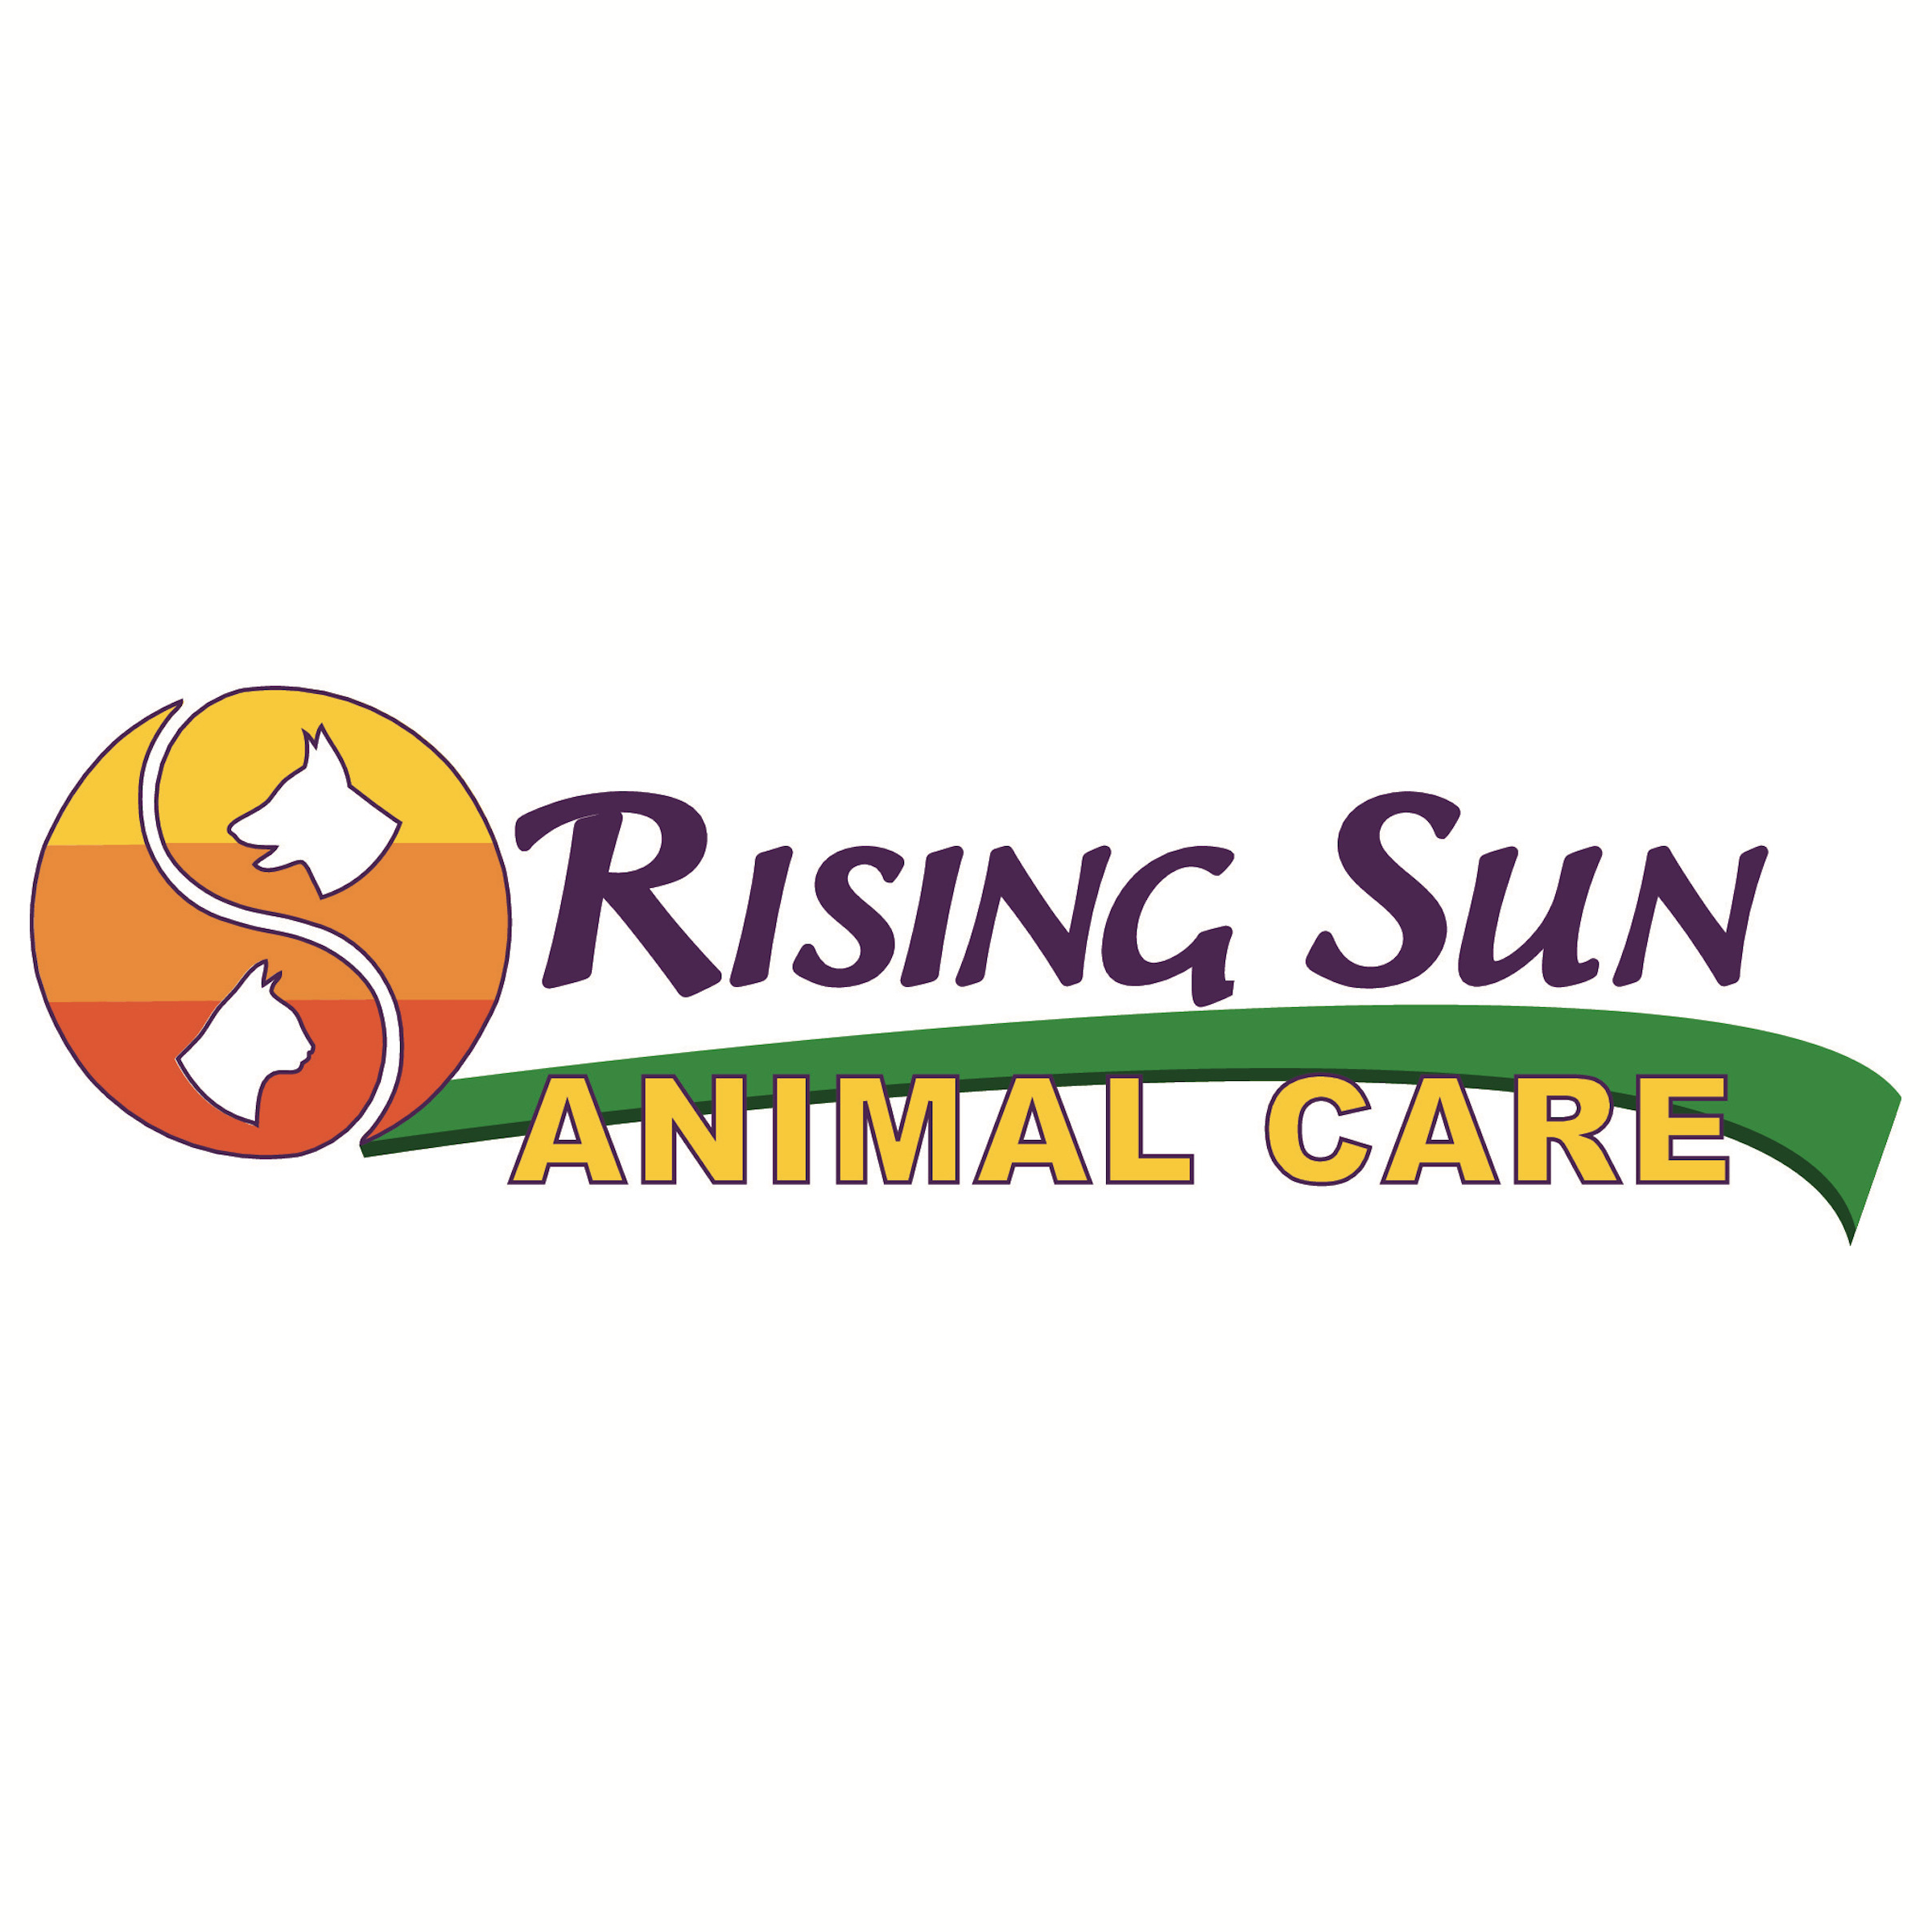 Rising Sun Animal Care - Denver, CO 80230 - (303)577-0195 | ShowMeLocal.com